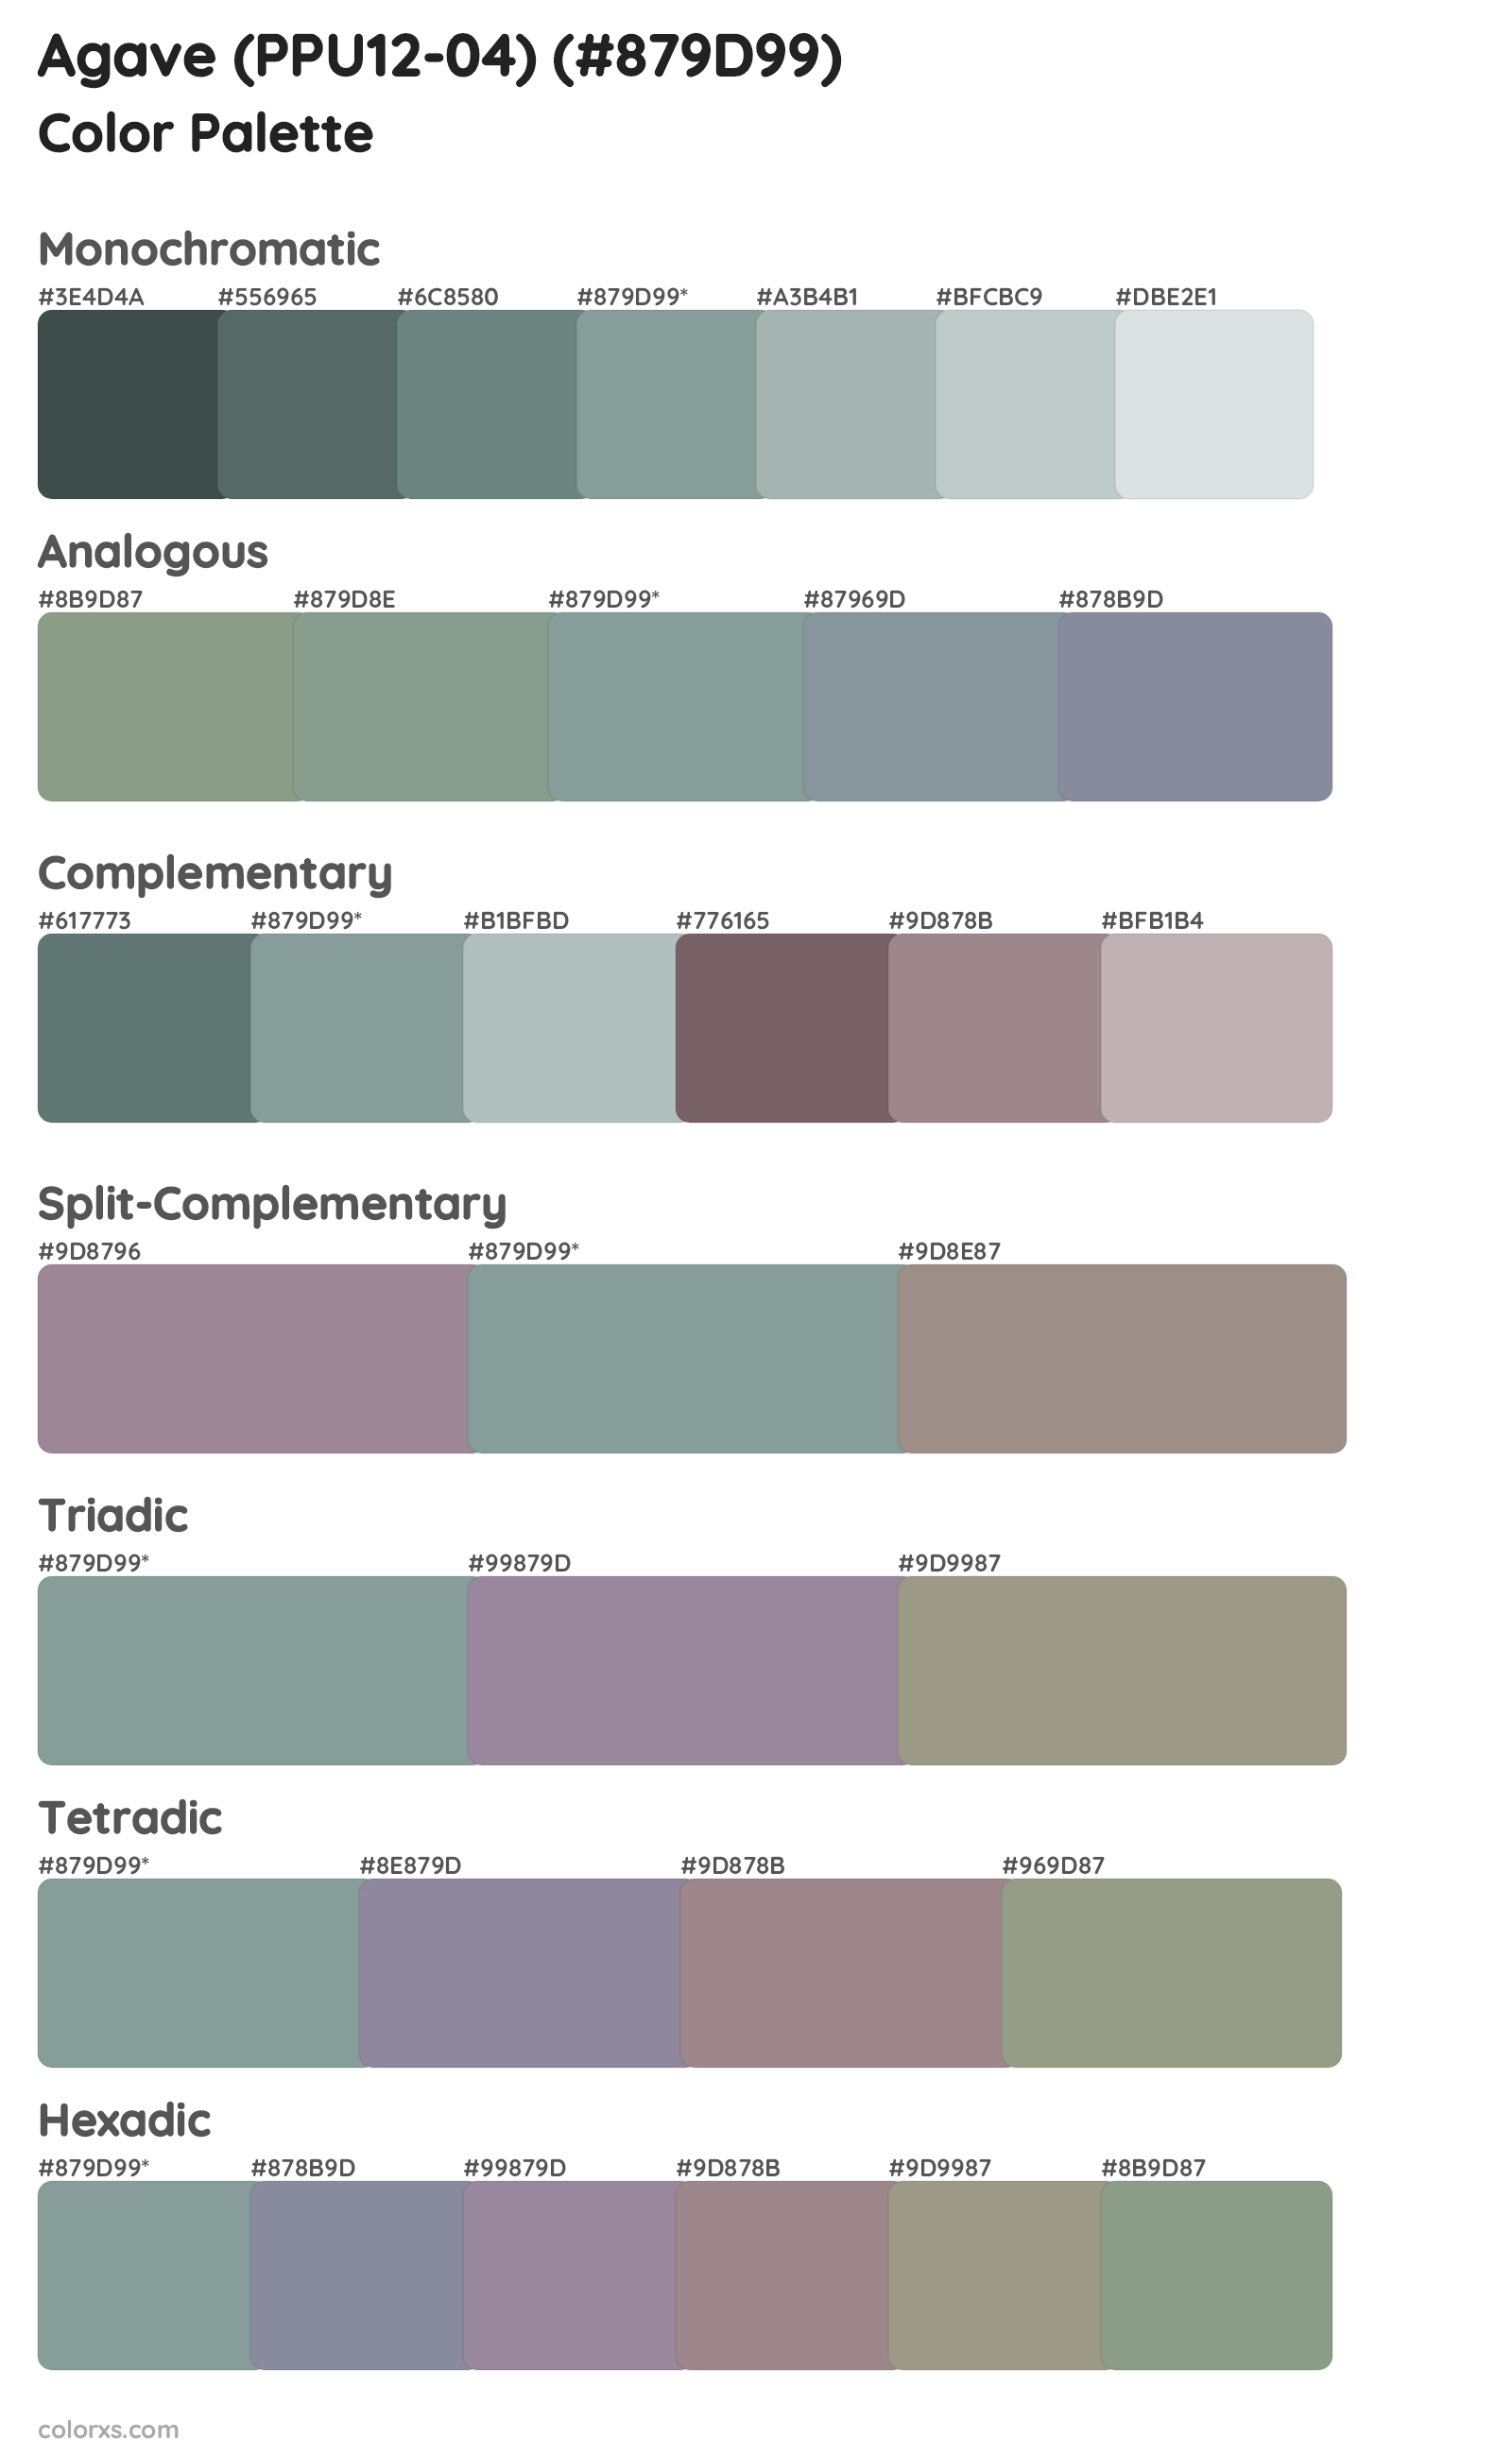 Agave (PPU12-04) Color Scheme Palettes